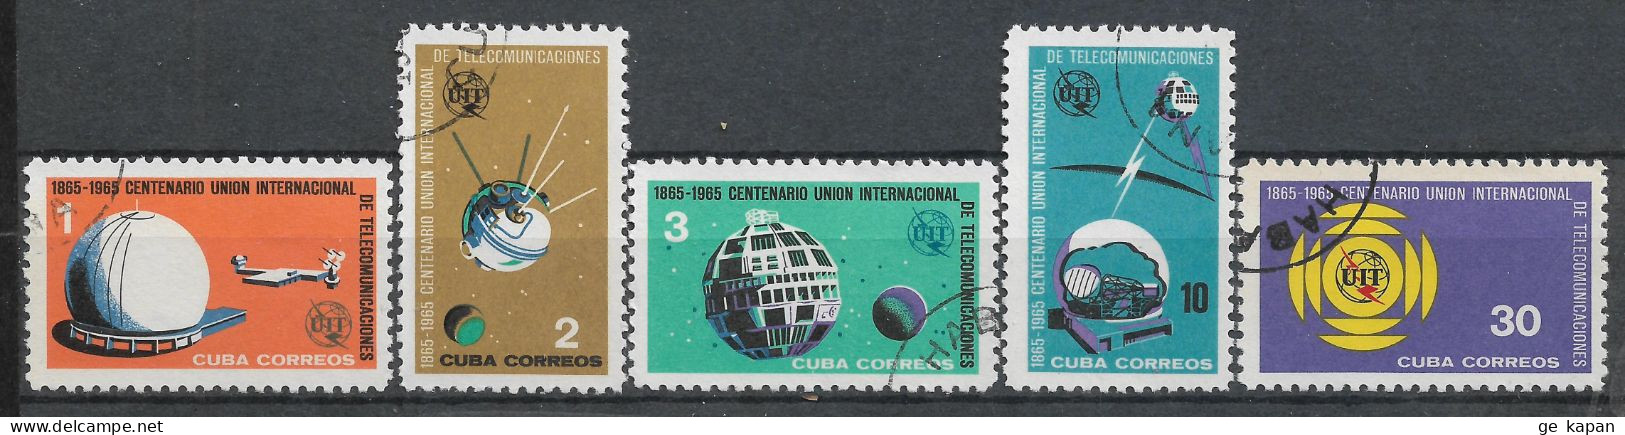 1965 CUBA COMPLETE SET OF 5 USED STAMPS (Michel # 1026-1030) CV €2.30 - Oblitérés